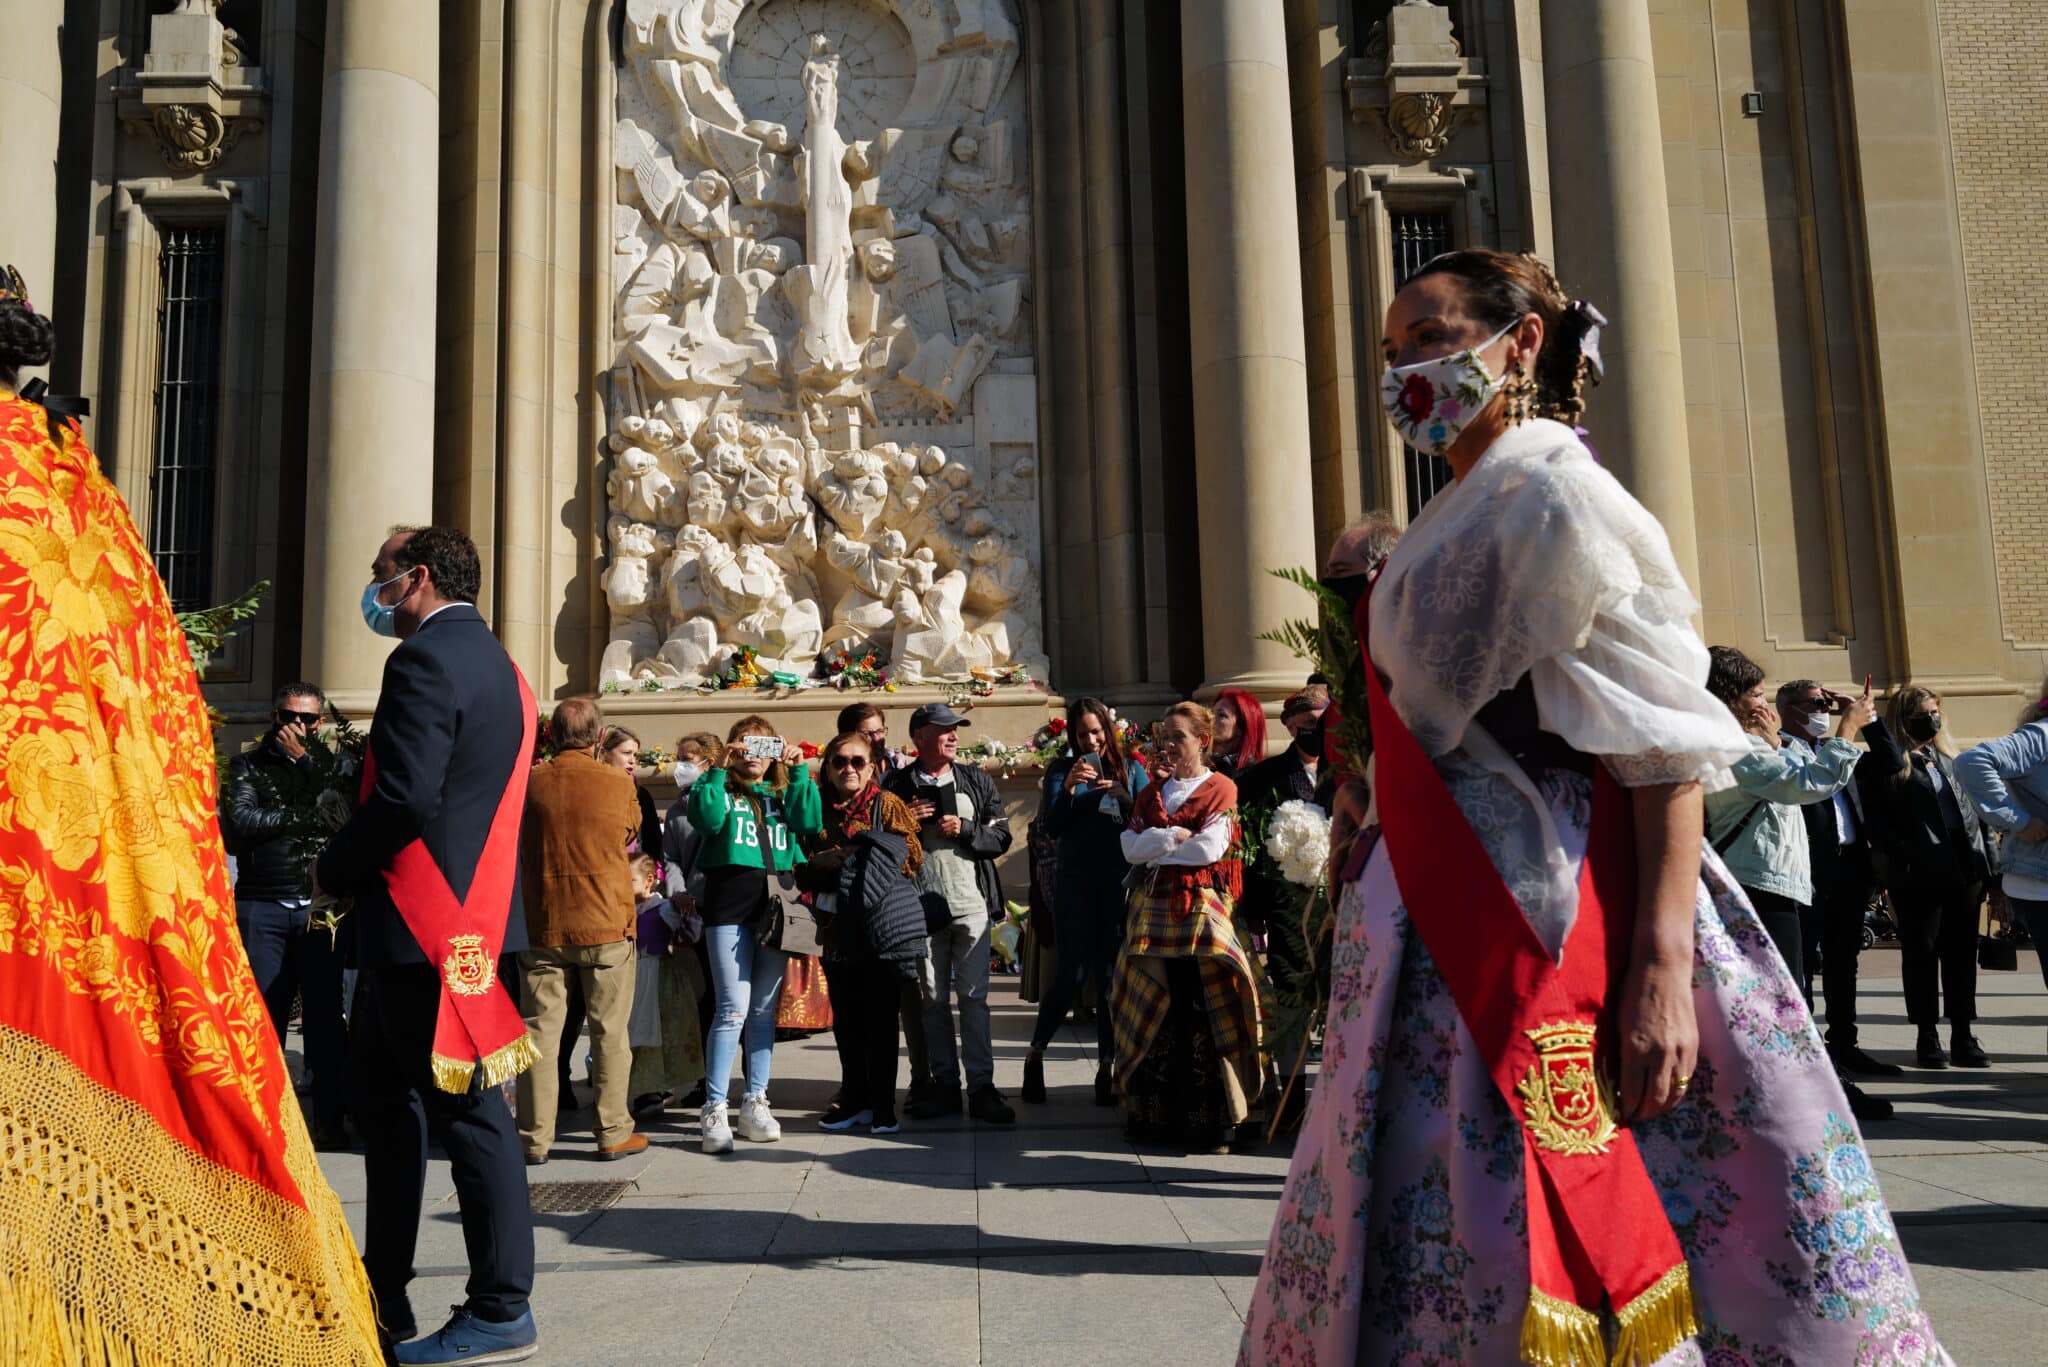 Una mujer vestida de "maña" en las inmediaciones de la Basílica del Pilar, donde hoy se realiza la tradicional ofrenda de flores a la Virgen del Pilar el día de su festividad